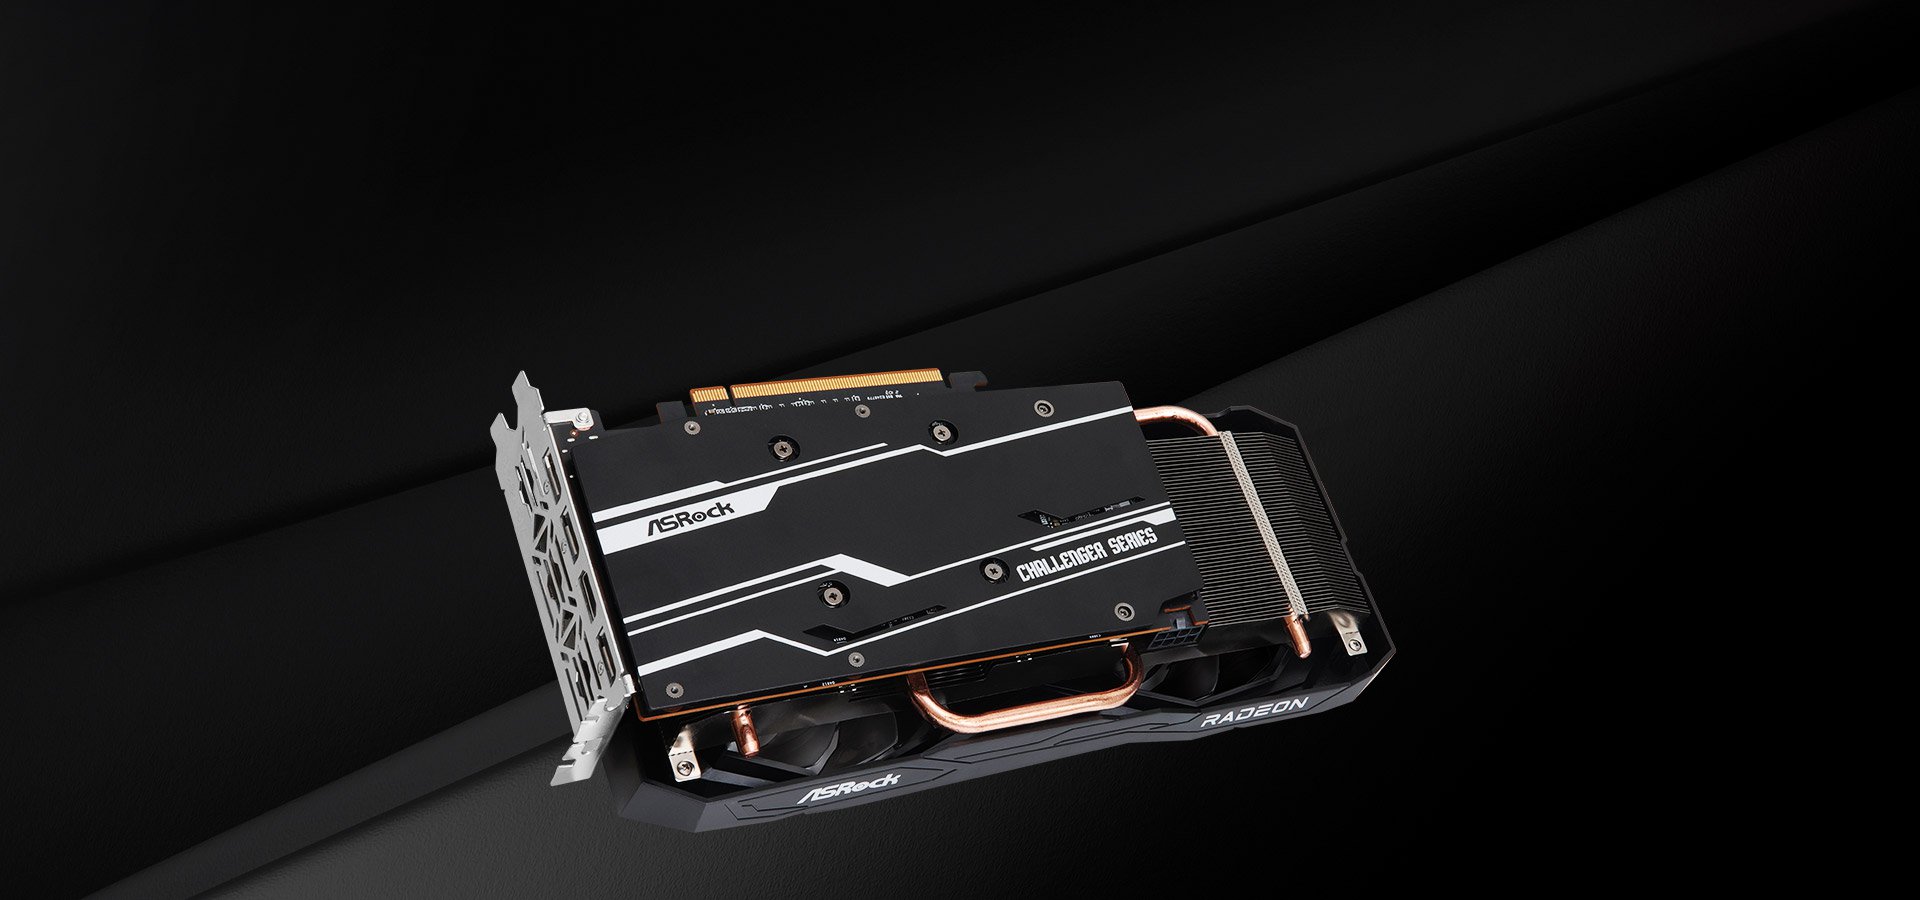 ASRock > AMD Radeon™ RX 6650 XT Steel Legend 8GB OC